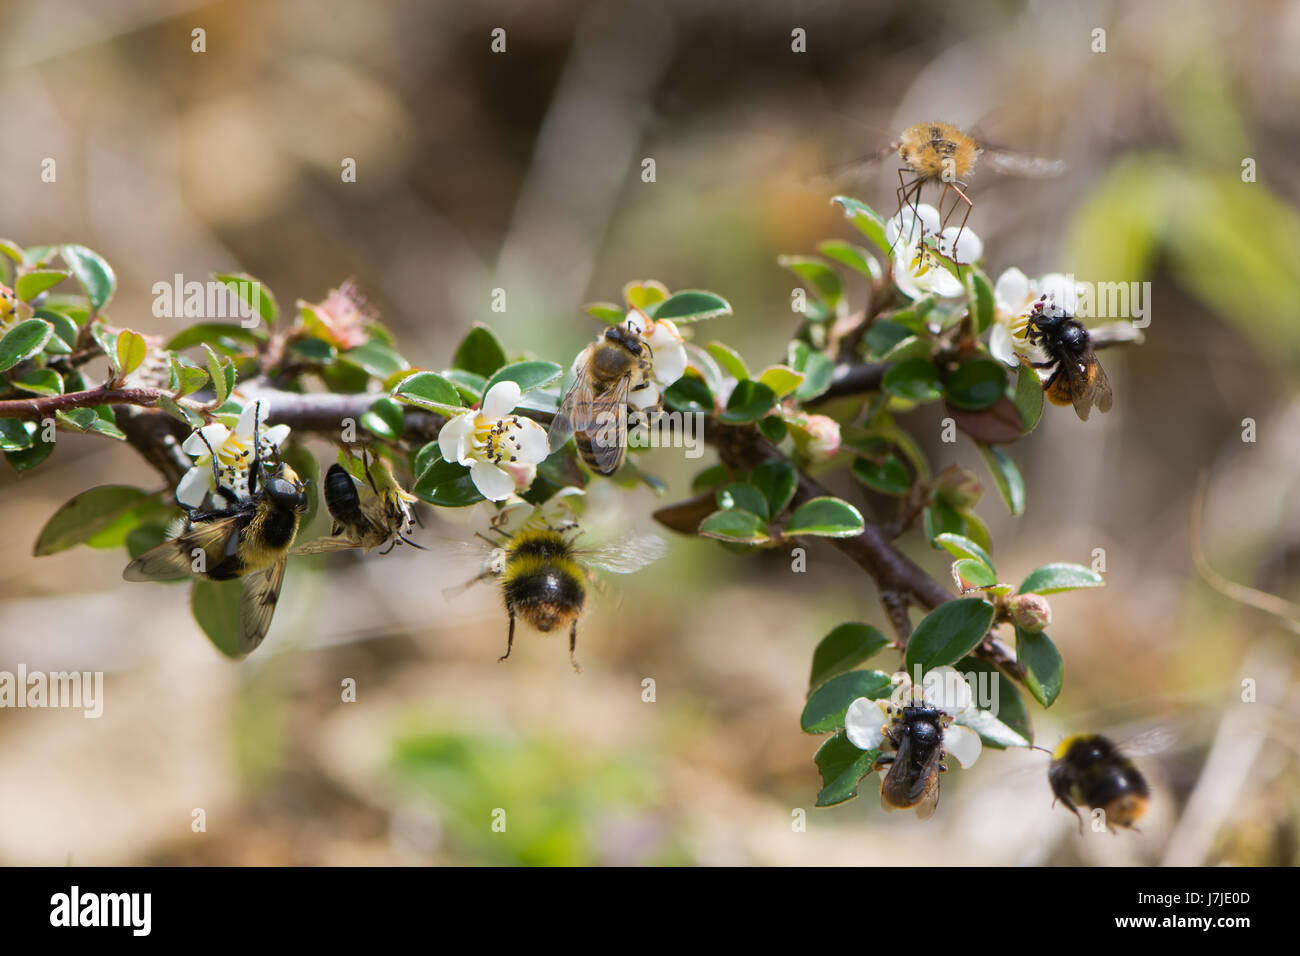 Composito della British api e imita. Hoverfly (Volucella bombylans), il miele delle api (Apis melifera), inizio bumblebee (Bombus pratorum), bee fly Foto Stock